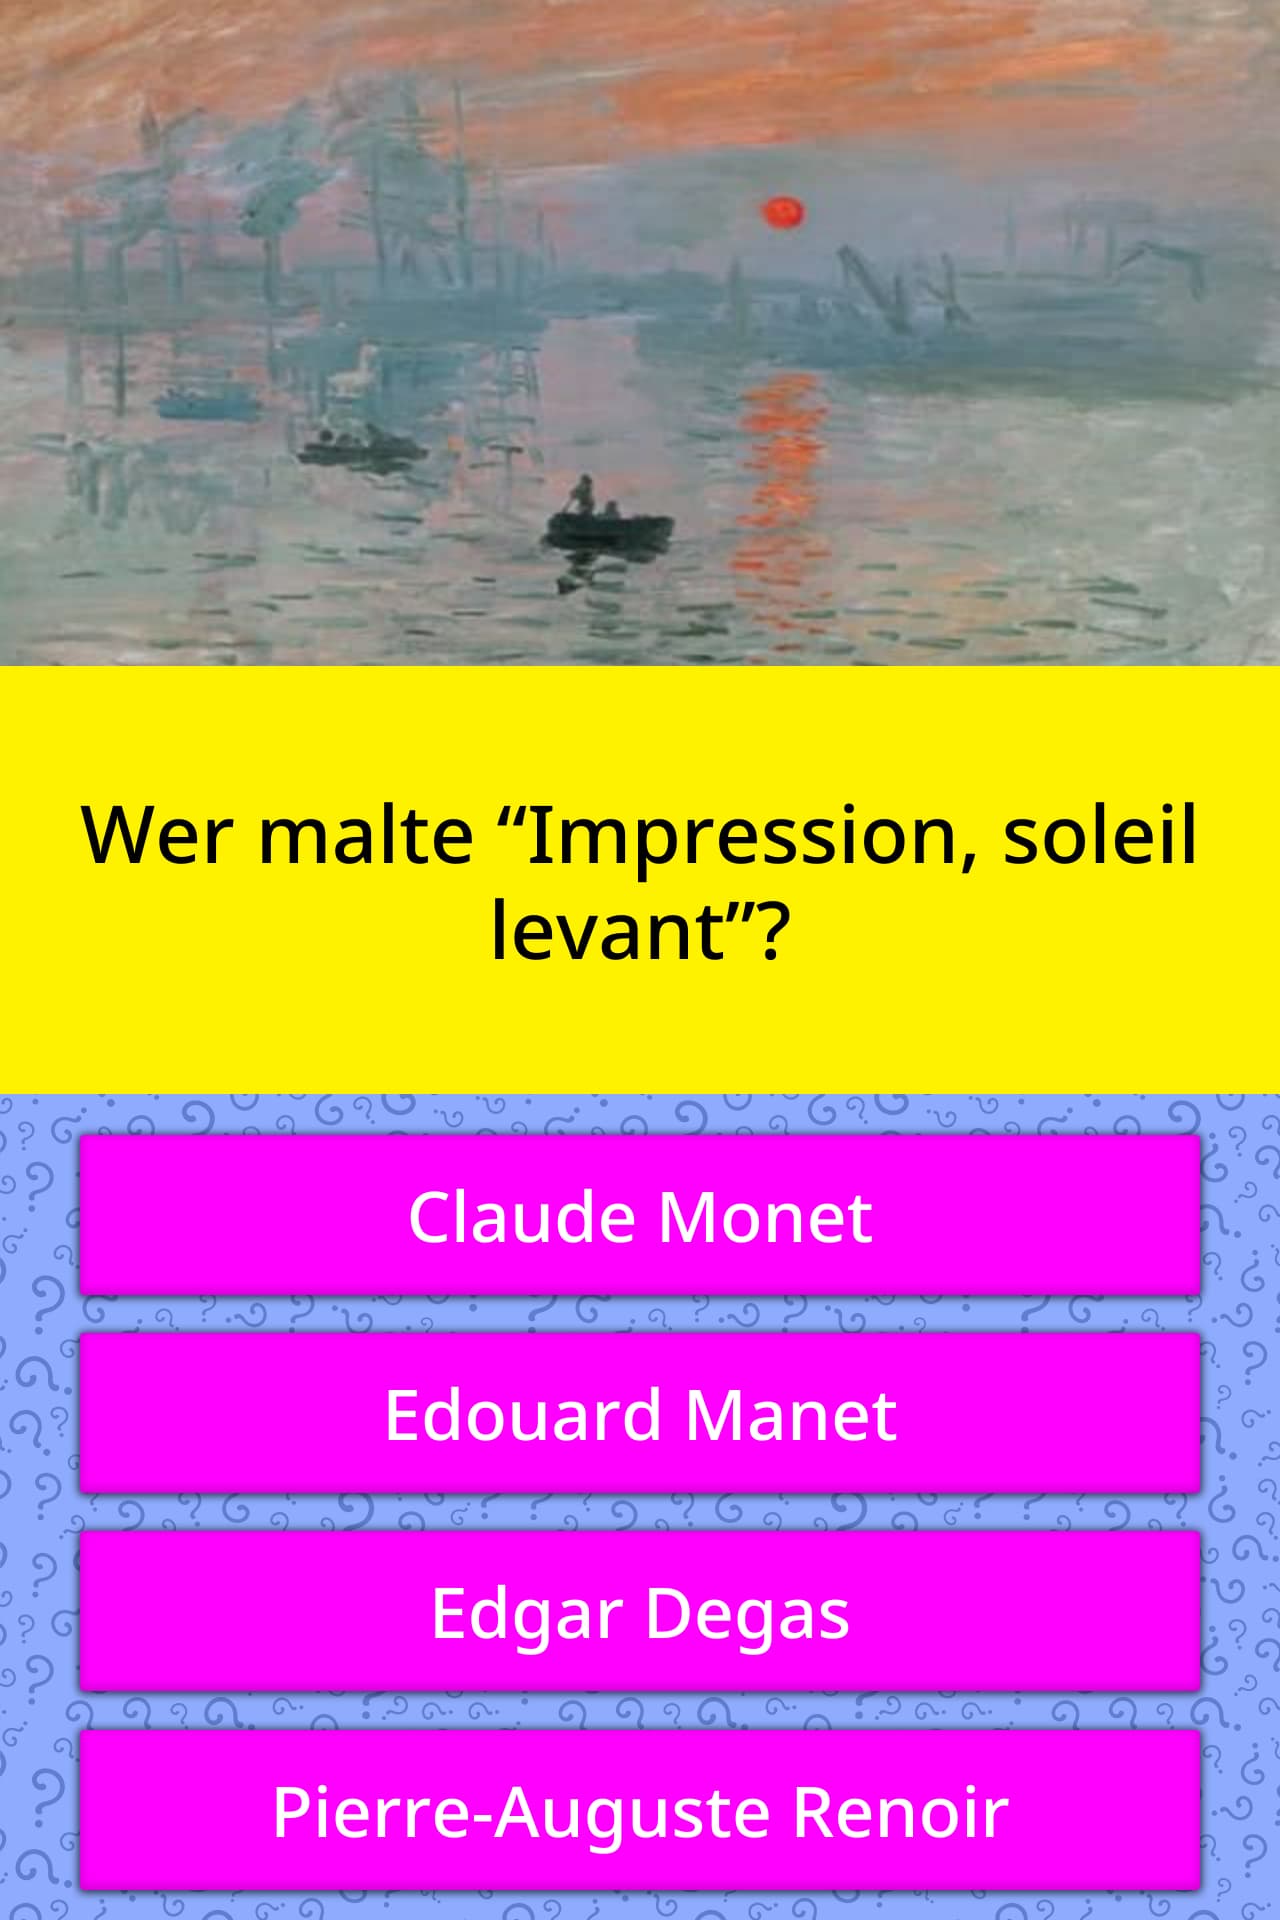 Wer malte “Impression, soleil levant”? | Quiz-Antworten ...